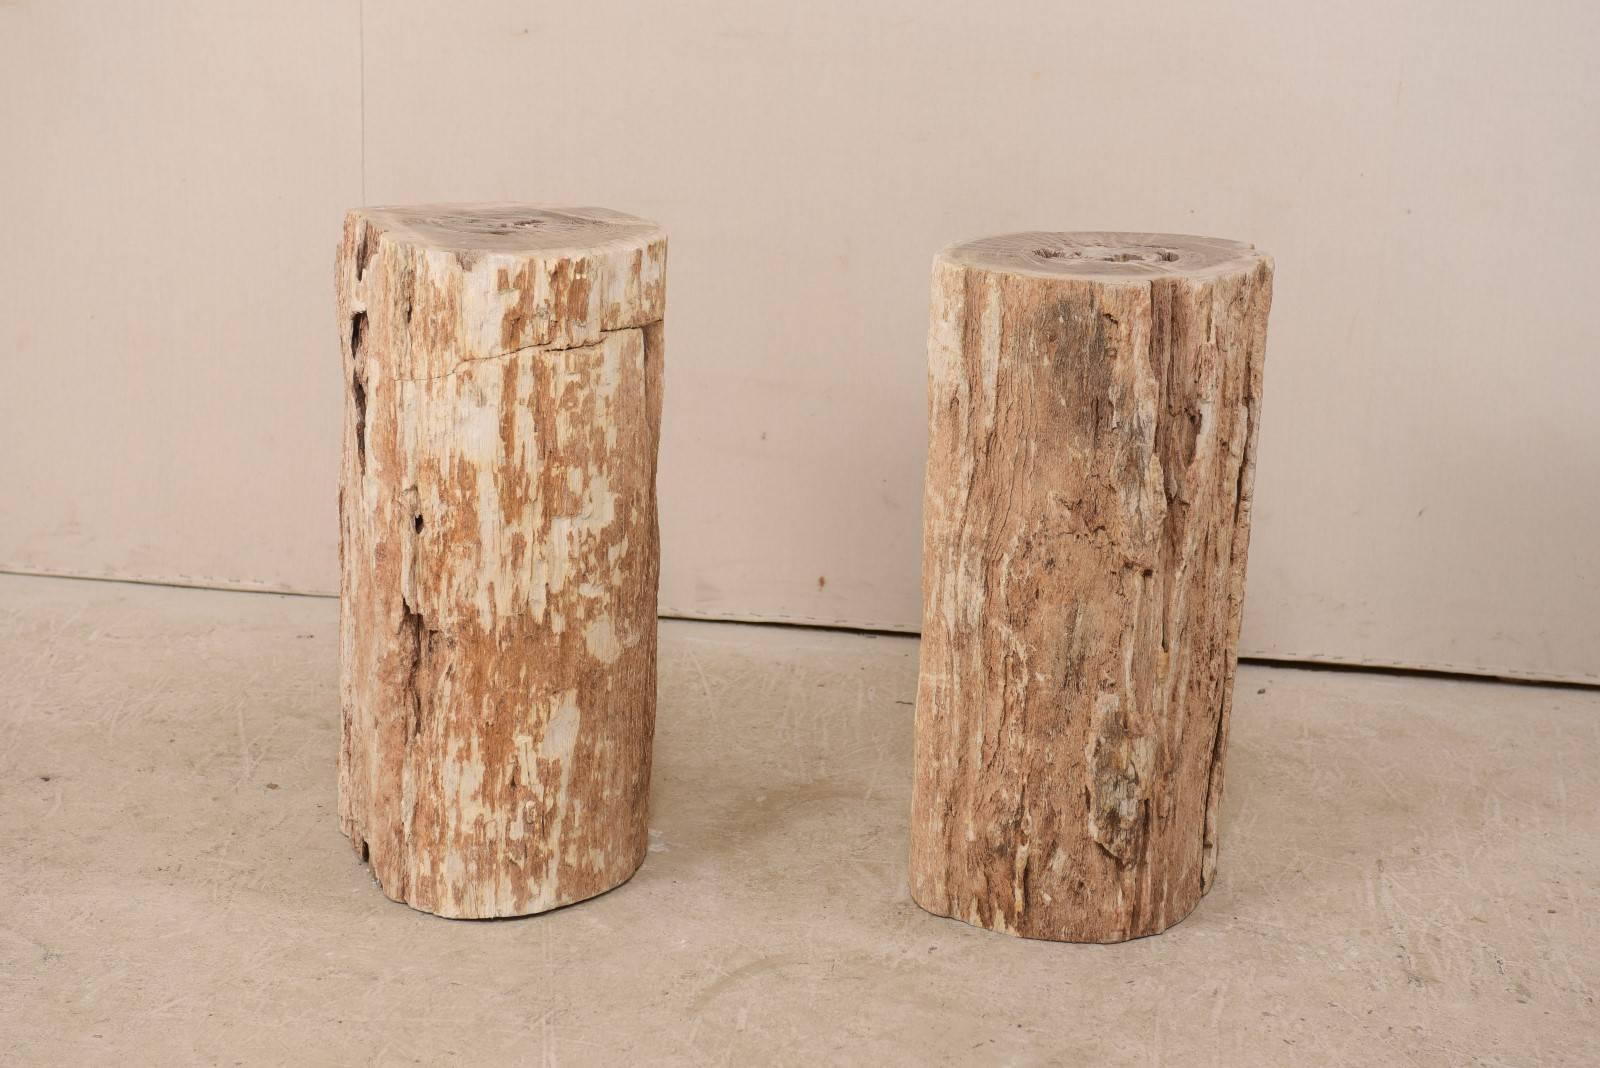 Ein Paar Sockeltische aus versteinertem Holz. Dieses Paar versteinerter Holzsockel ist in einem warmen Beige mit Rost und Knochen gehalten. Während die Seiten eine rauere Oberfläche aufweisen, sind die Oberseiten poliert worden. Versteinertes Holz